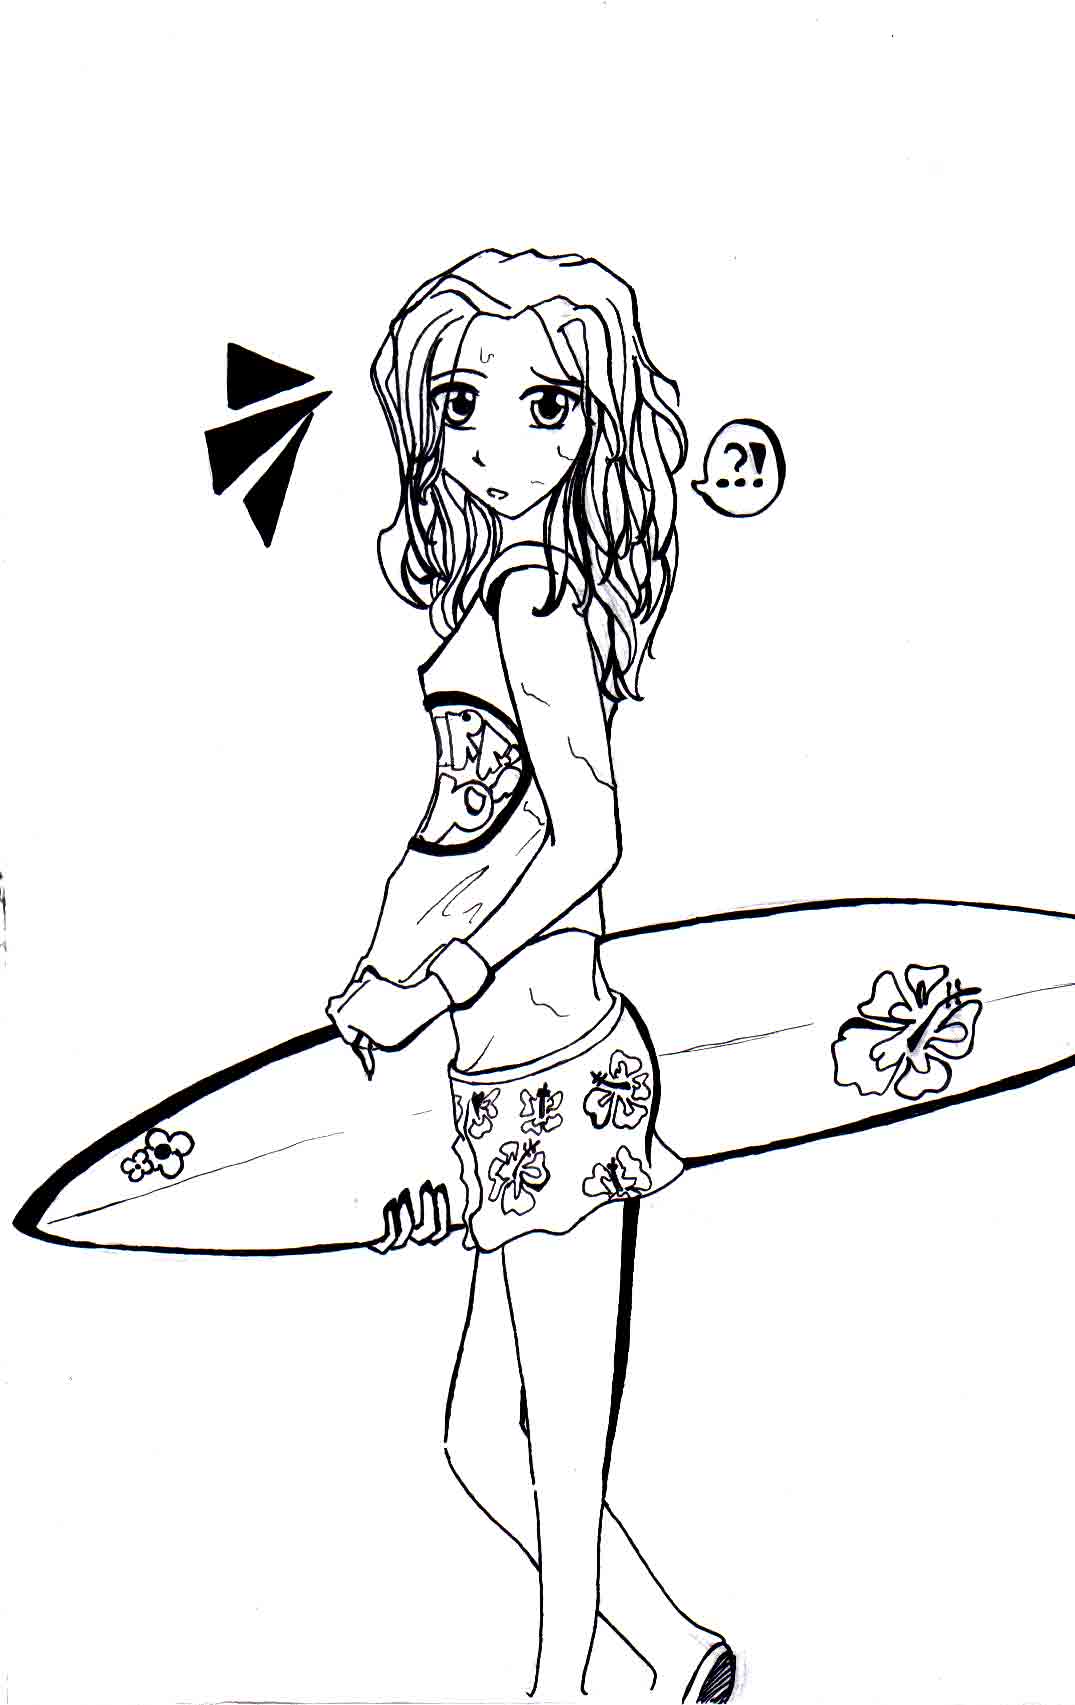 Surfer Girl by WintersxxPhoenix